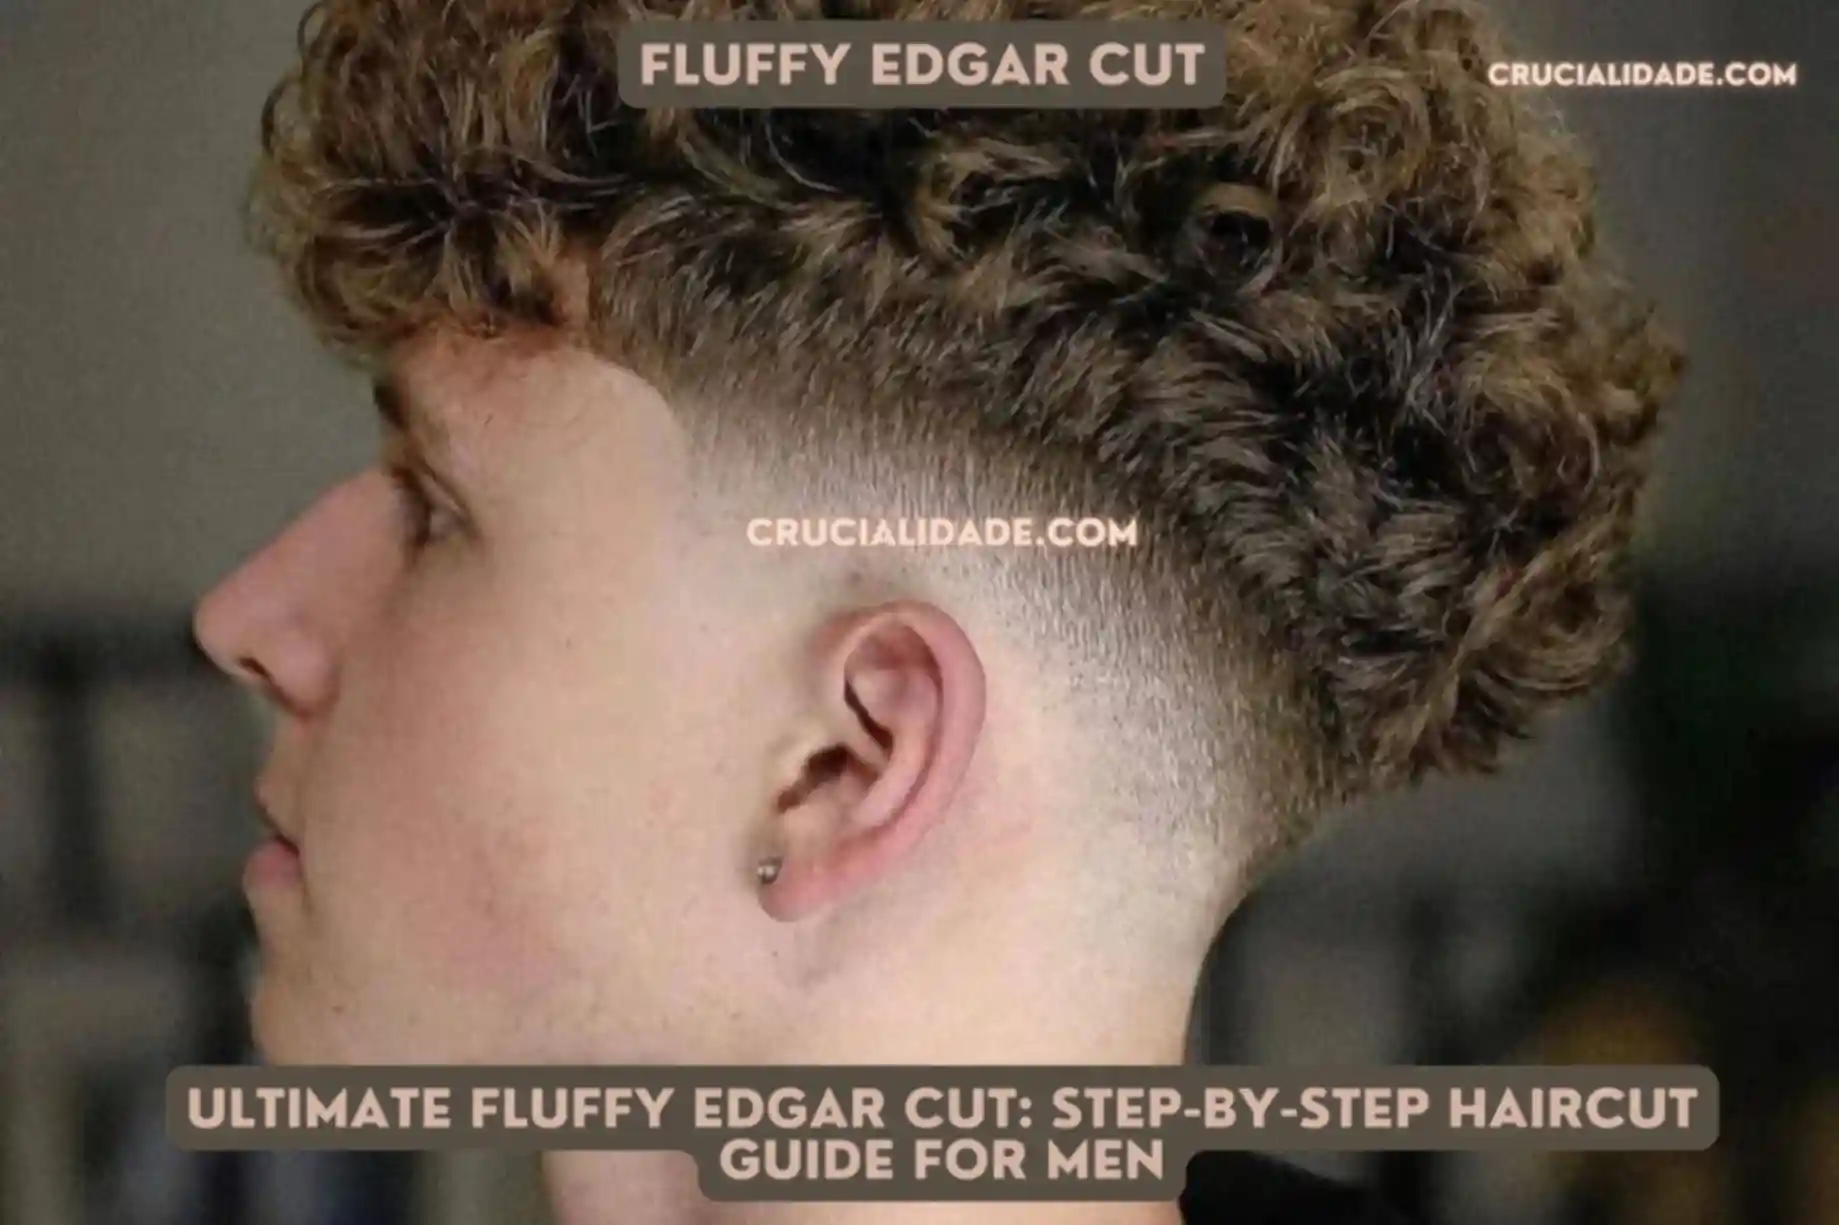 Fluffy Edgar cut